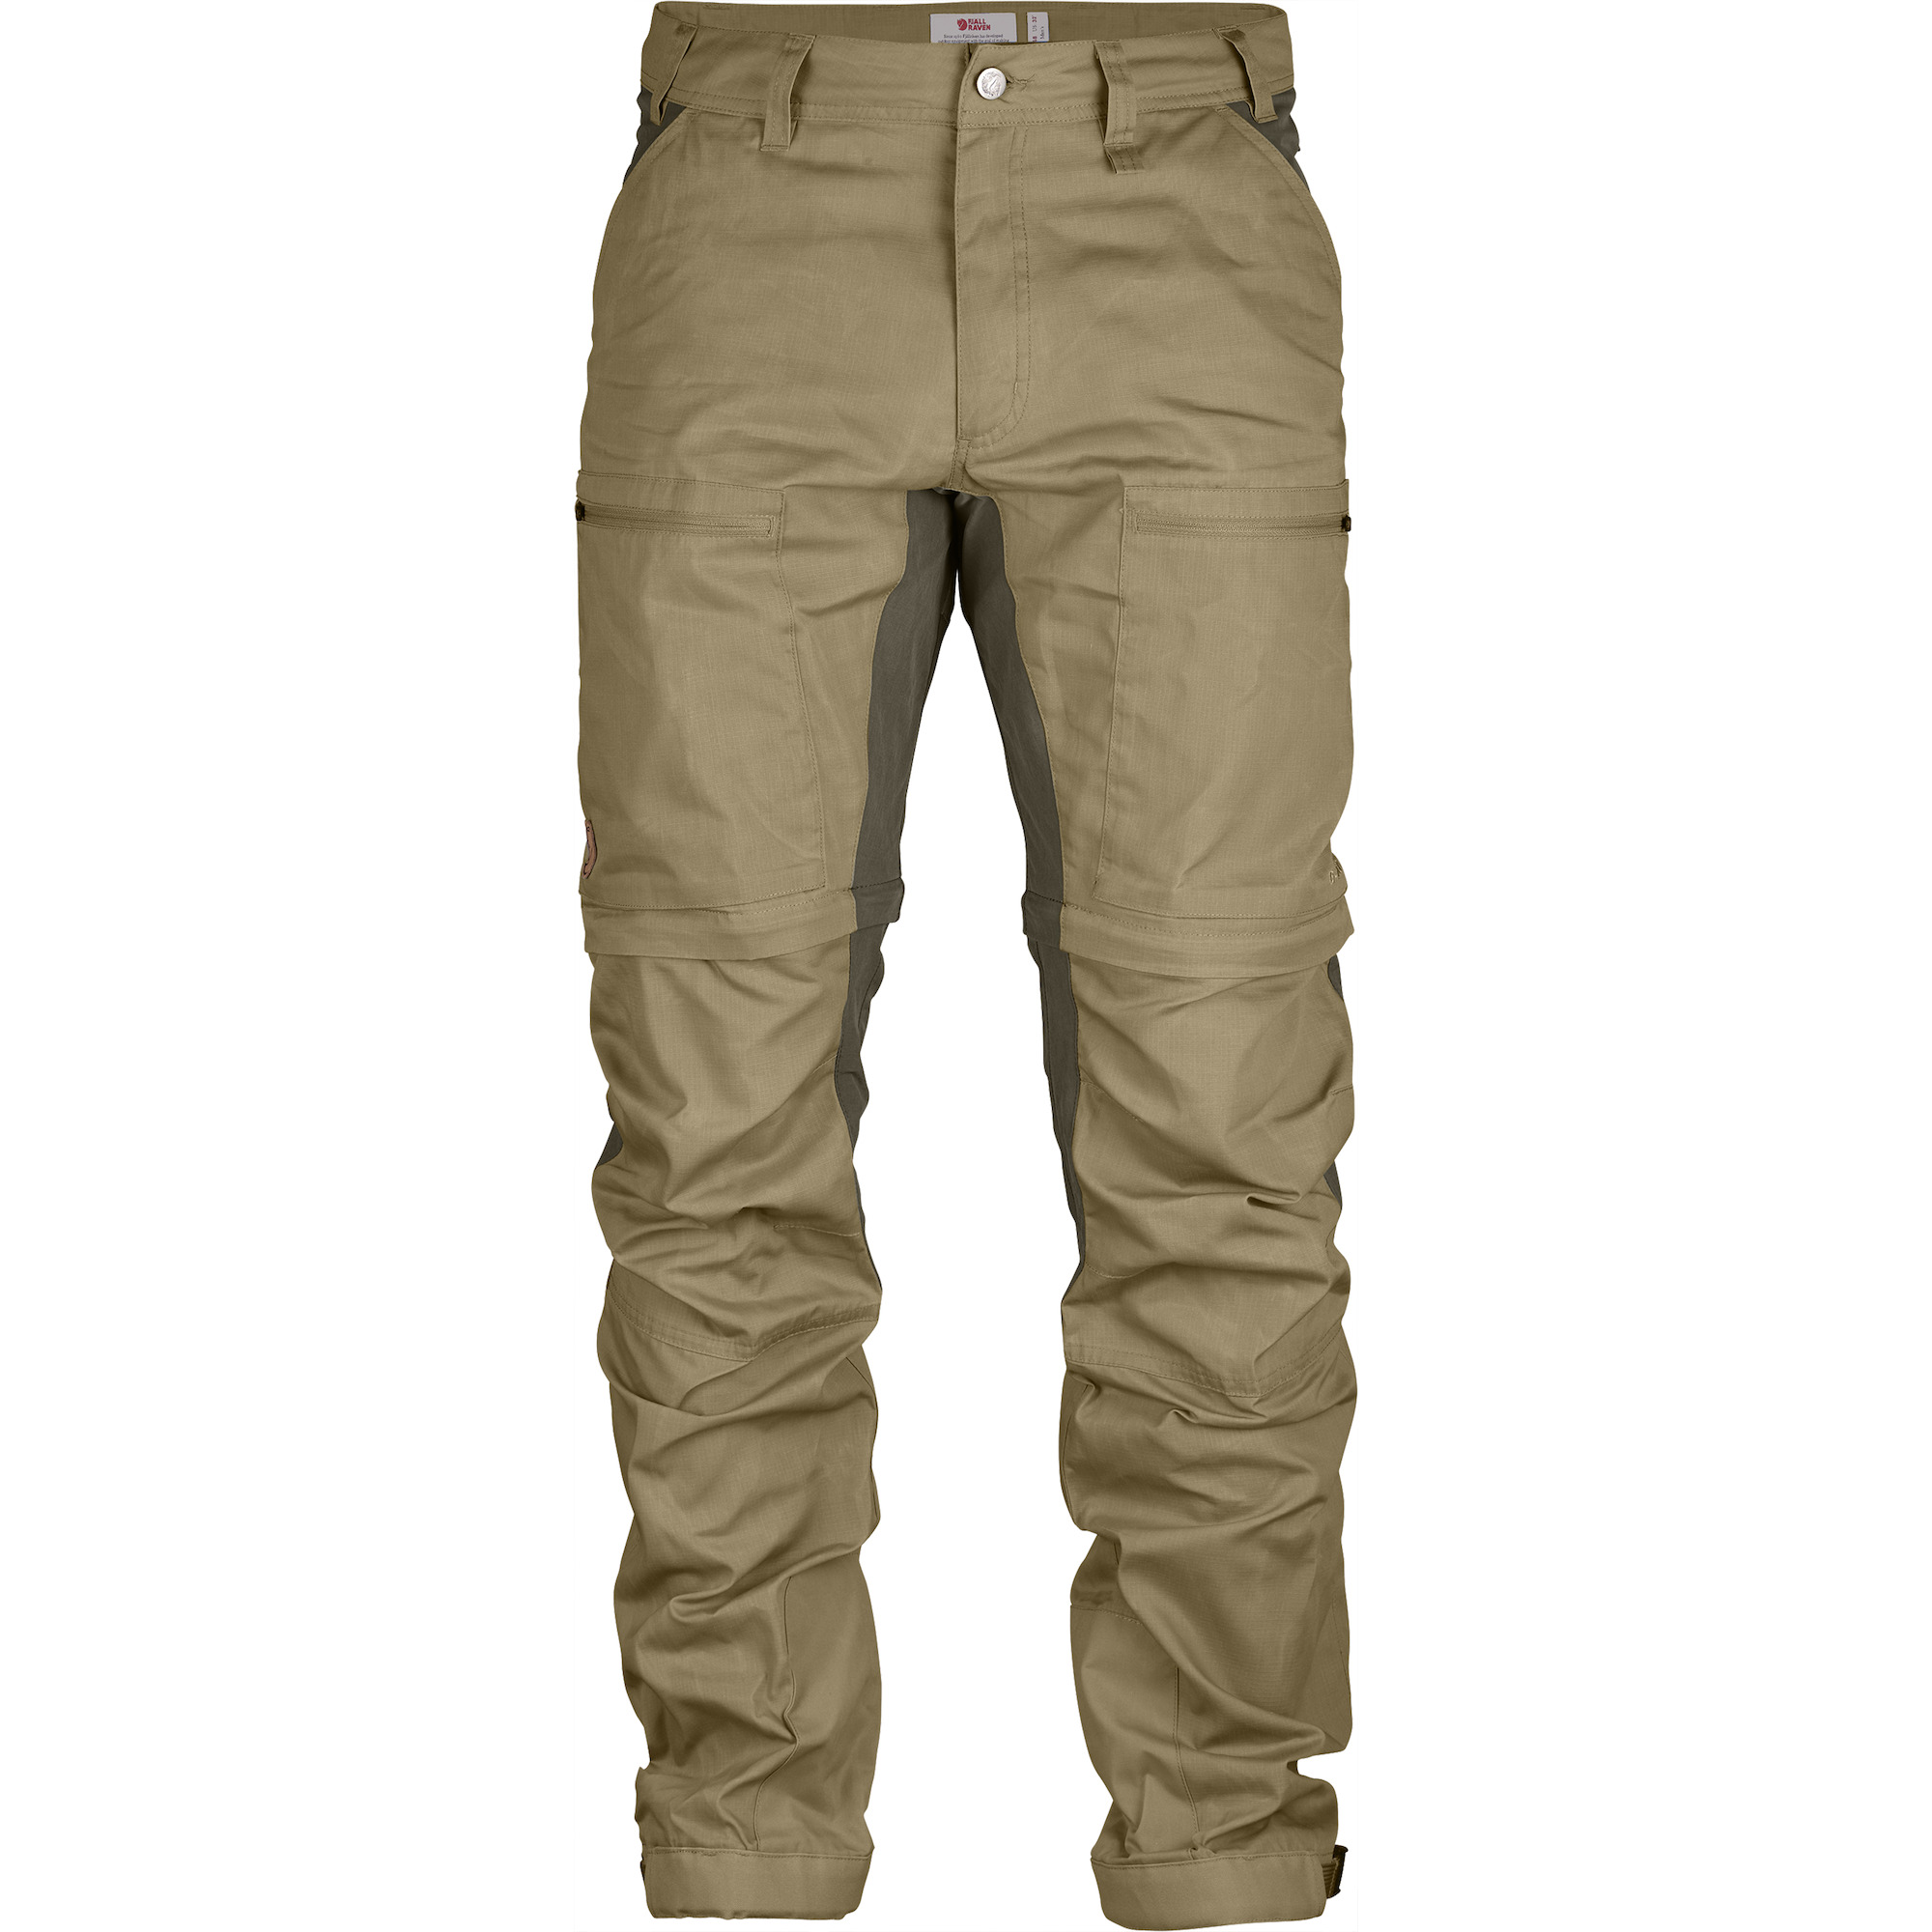 Canyon Creek Men's Convertible Pants Size L Zip Off Leg Nylon Tan  Lightweight | eBay